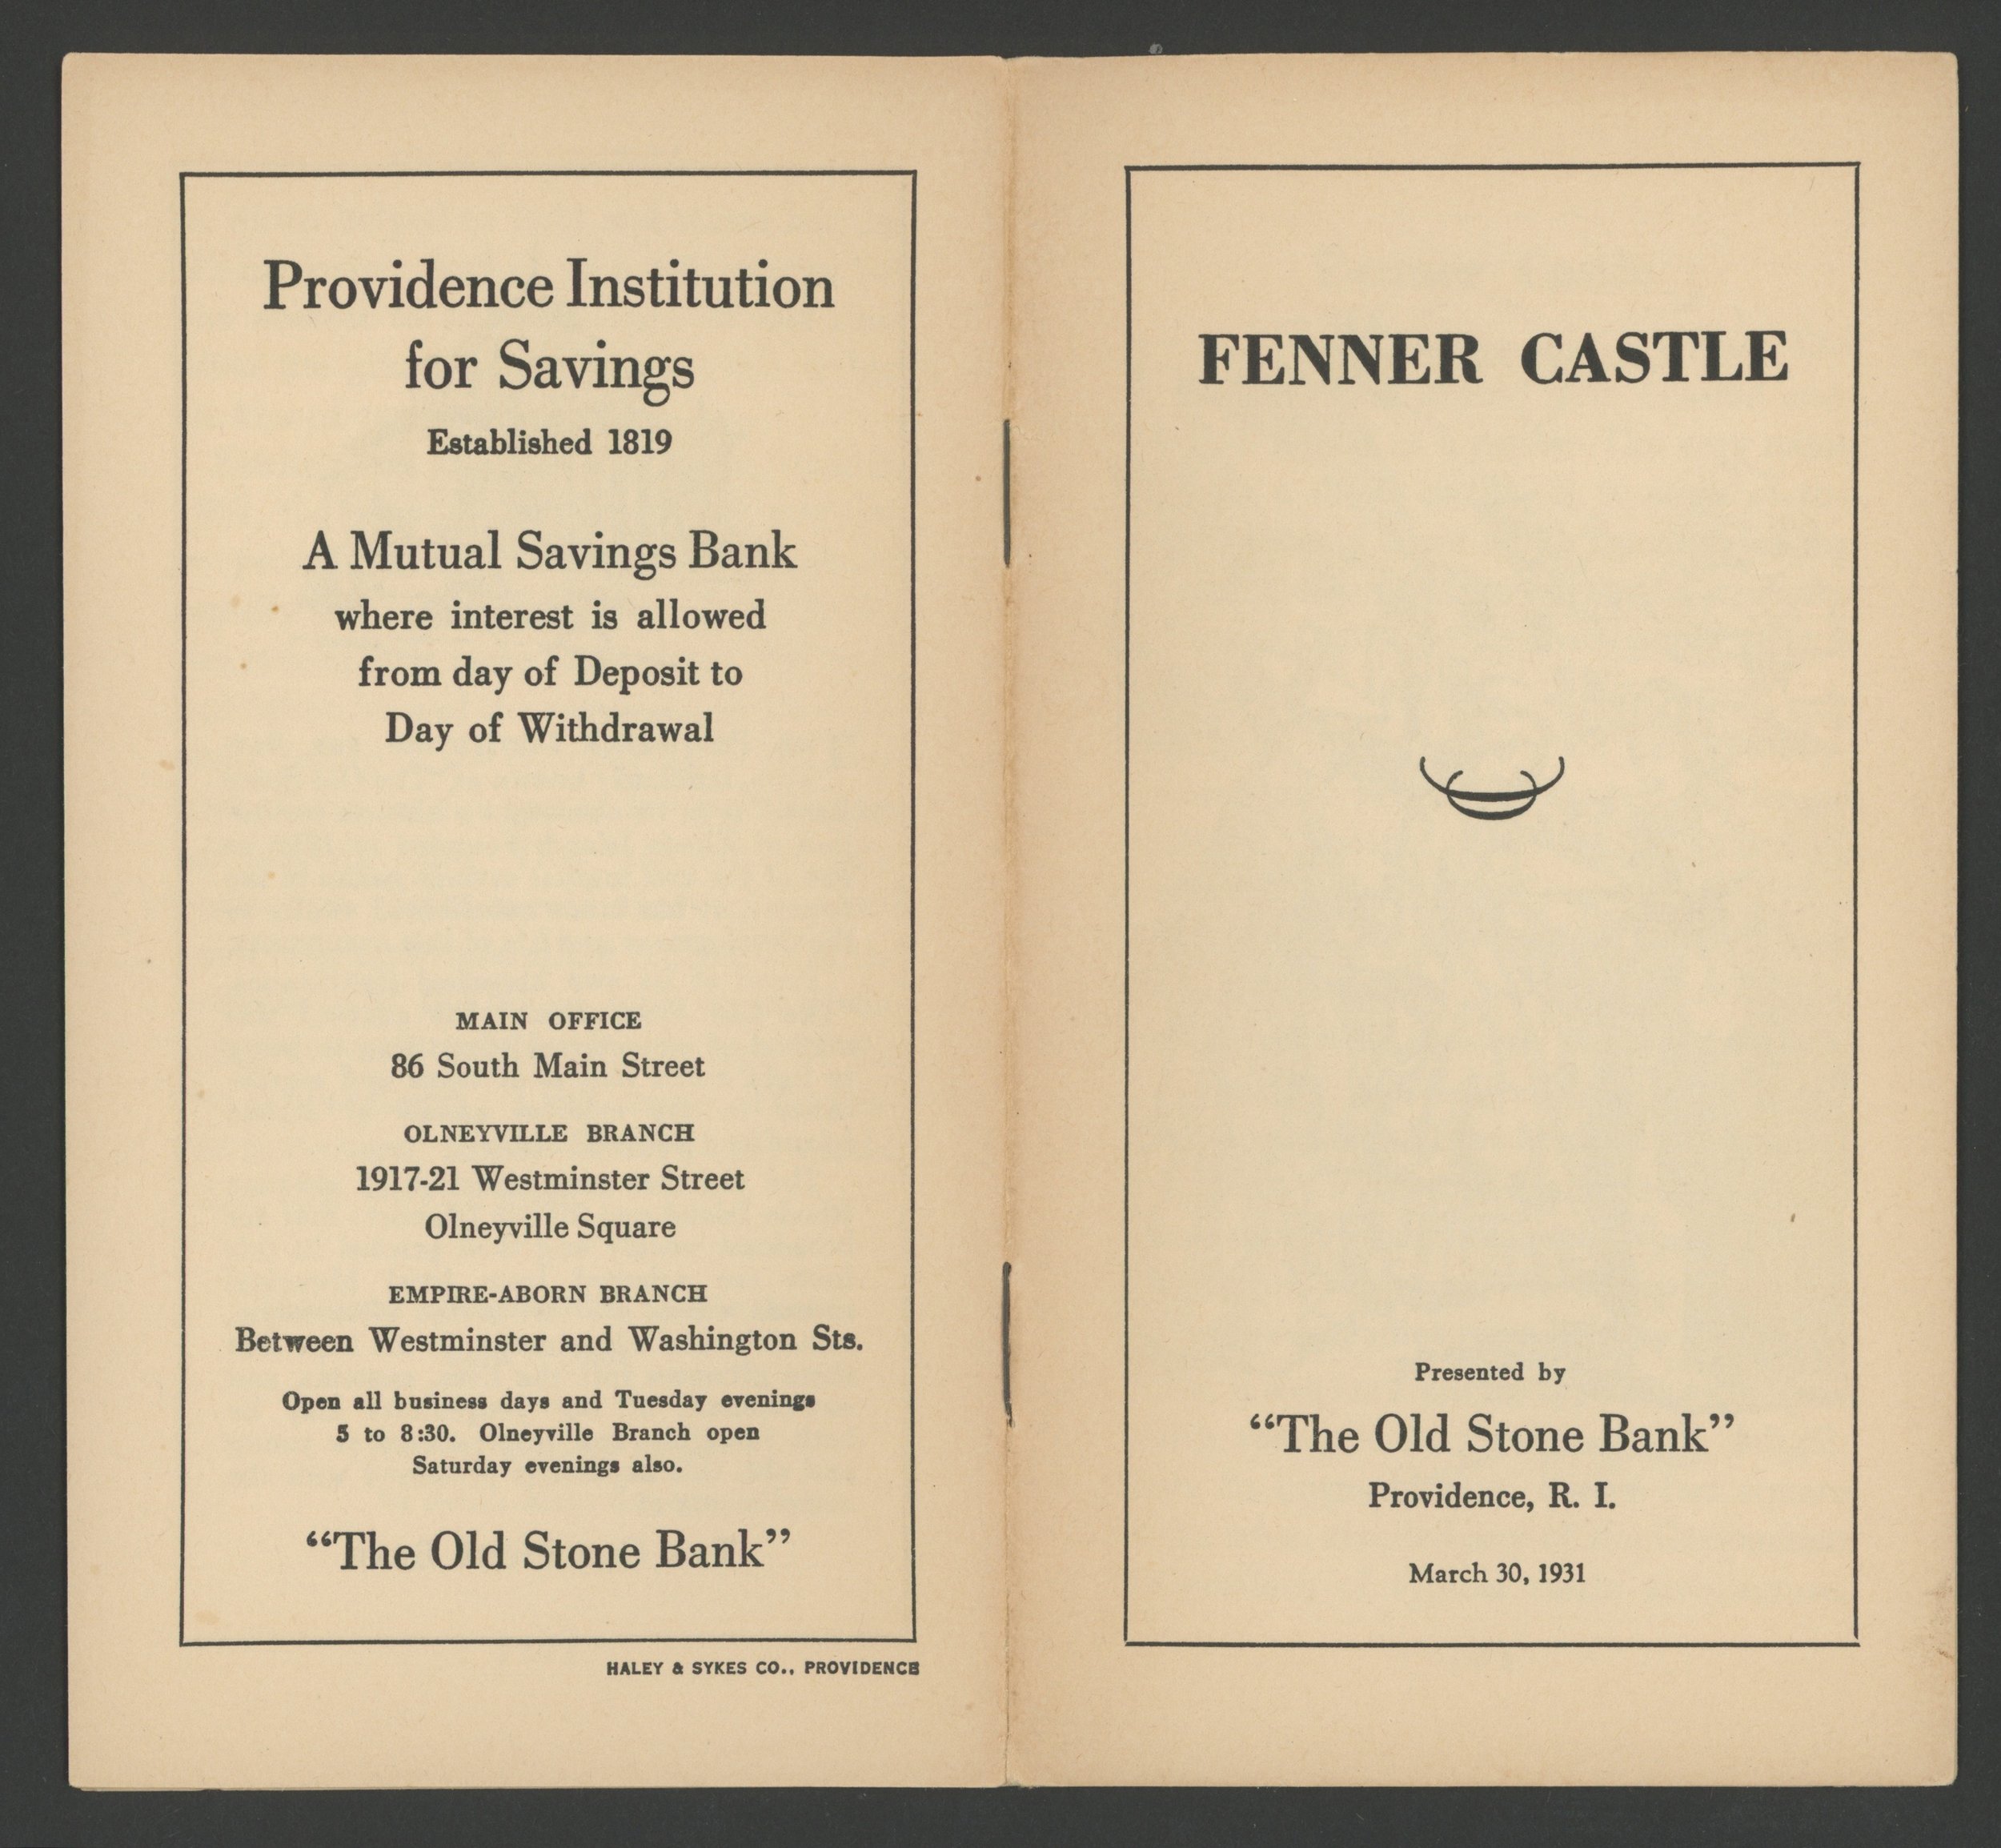 FennerCastle-1931-01.jpeg